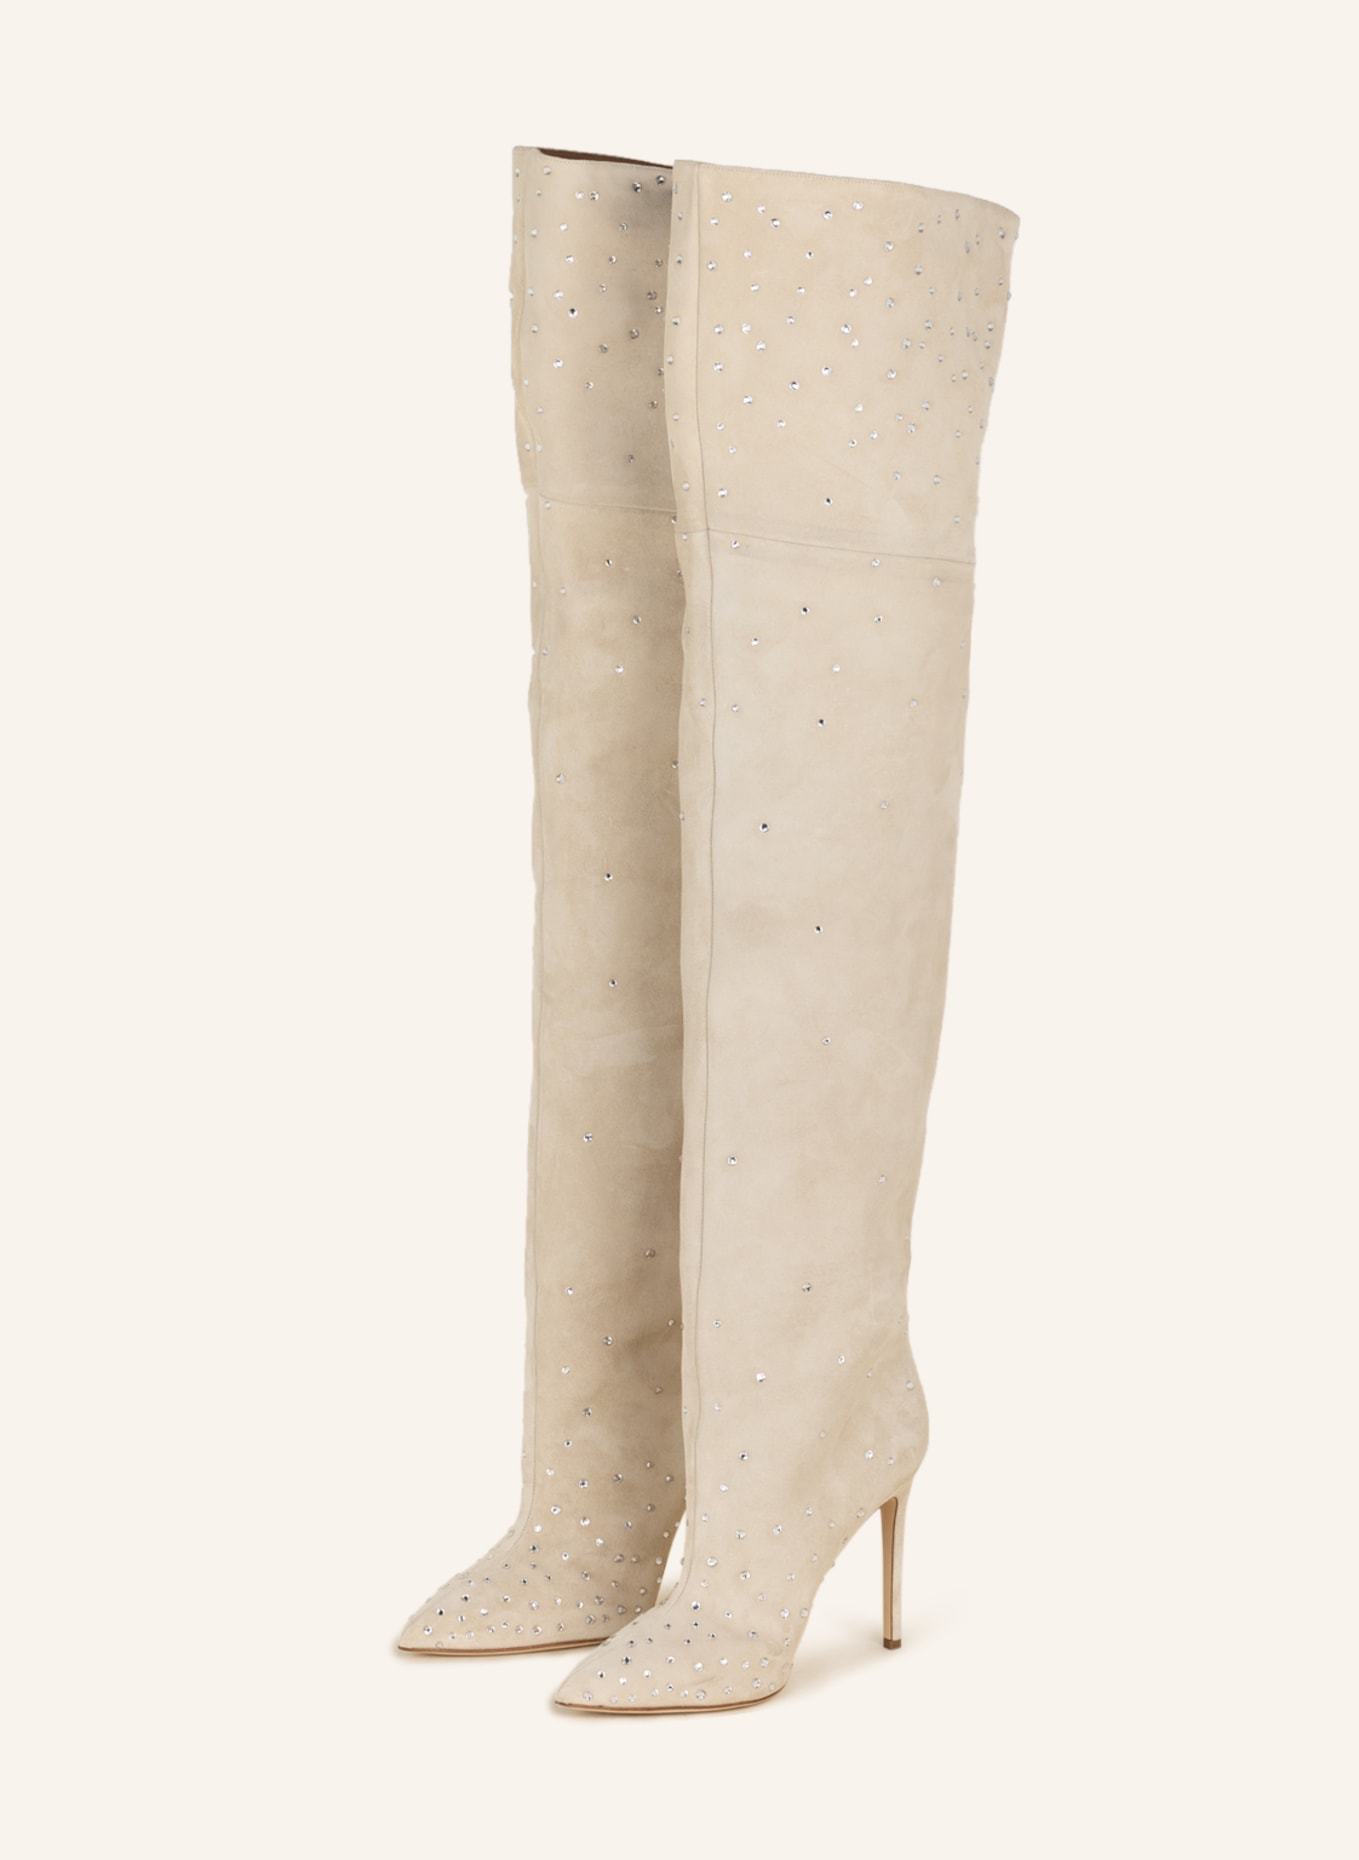 PARIS TEXAS Overknee-Stiefel HOLLY mit Schmucksteinen, Farbe: CREME (Bild 1)